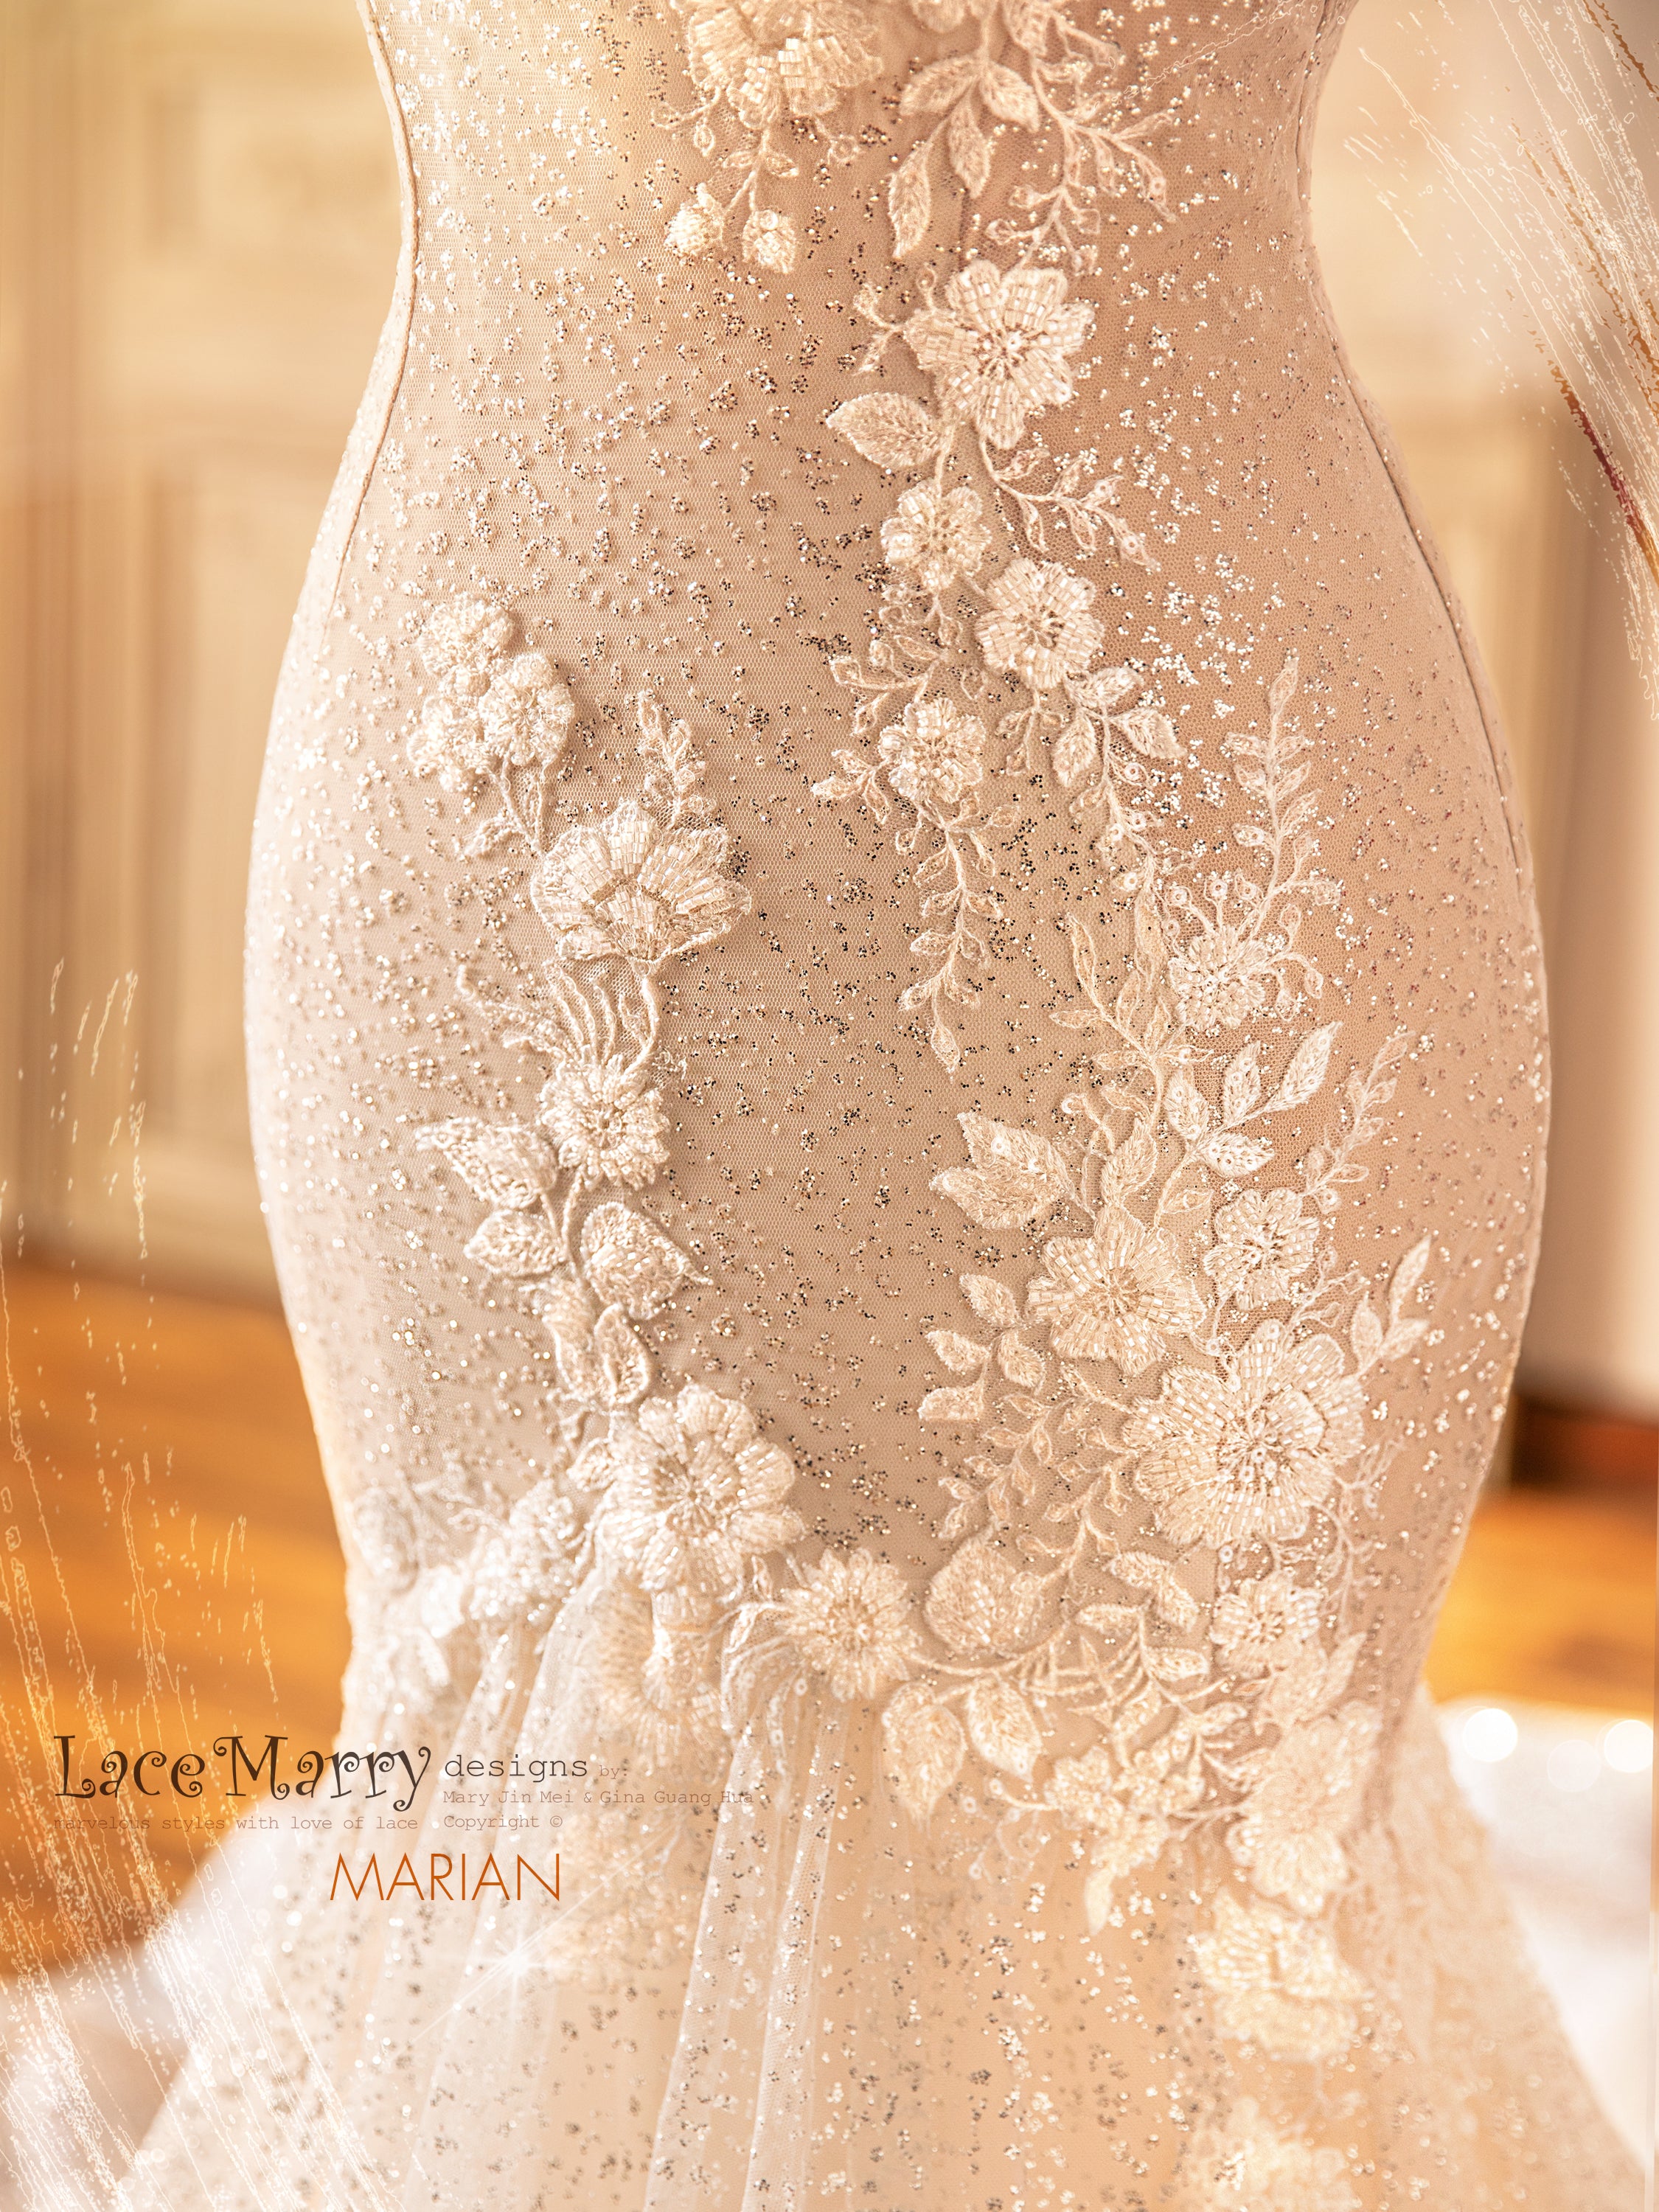 Long Sleeve Lace Wedding Dress, Lace Wedding Dress, Backless Wedding Dress,  Mermaid Wedding Dress, Low Back Wedding Dress 0157 -  Canada